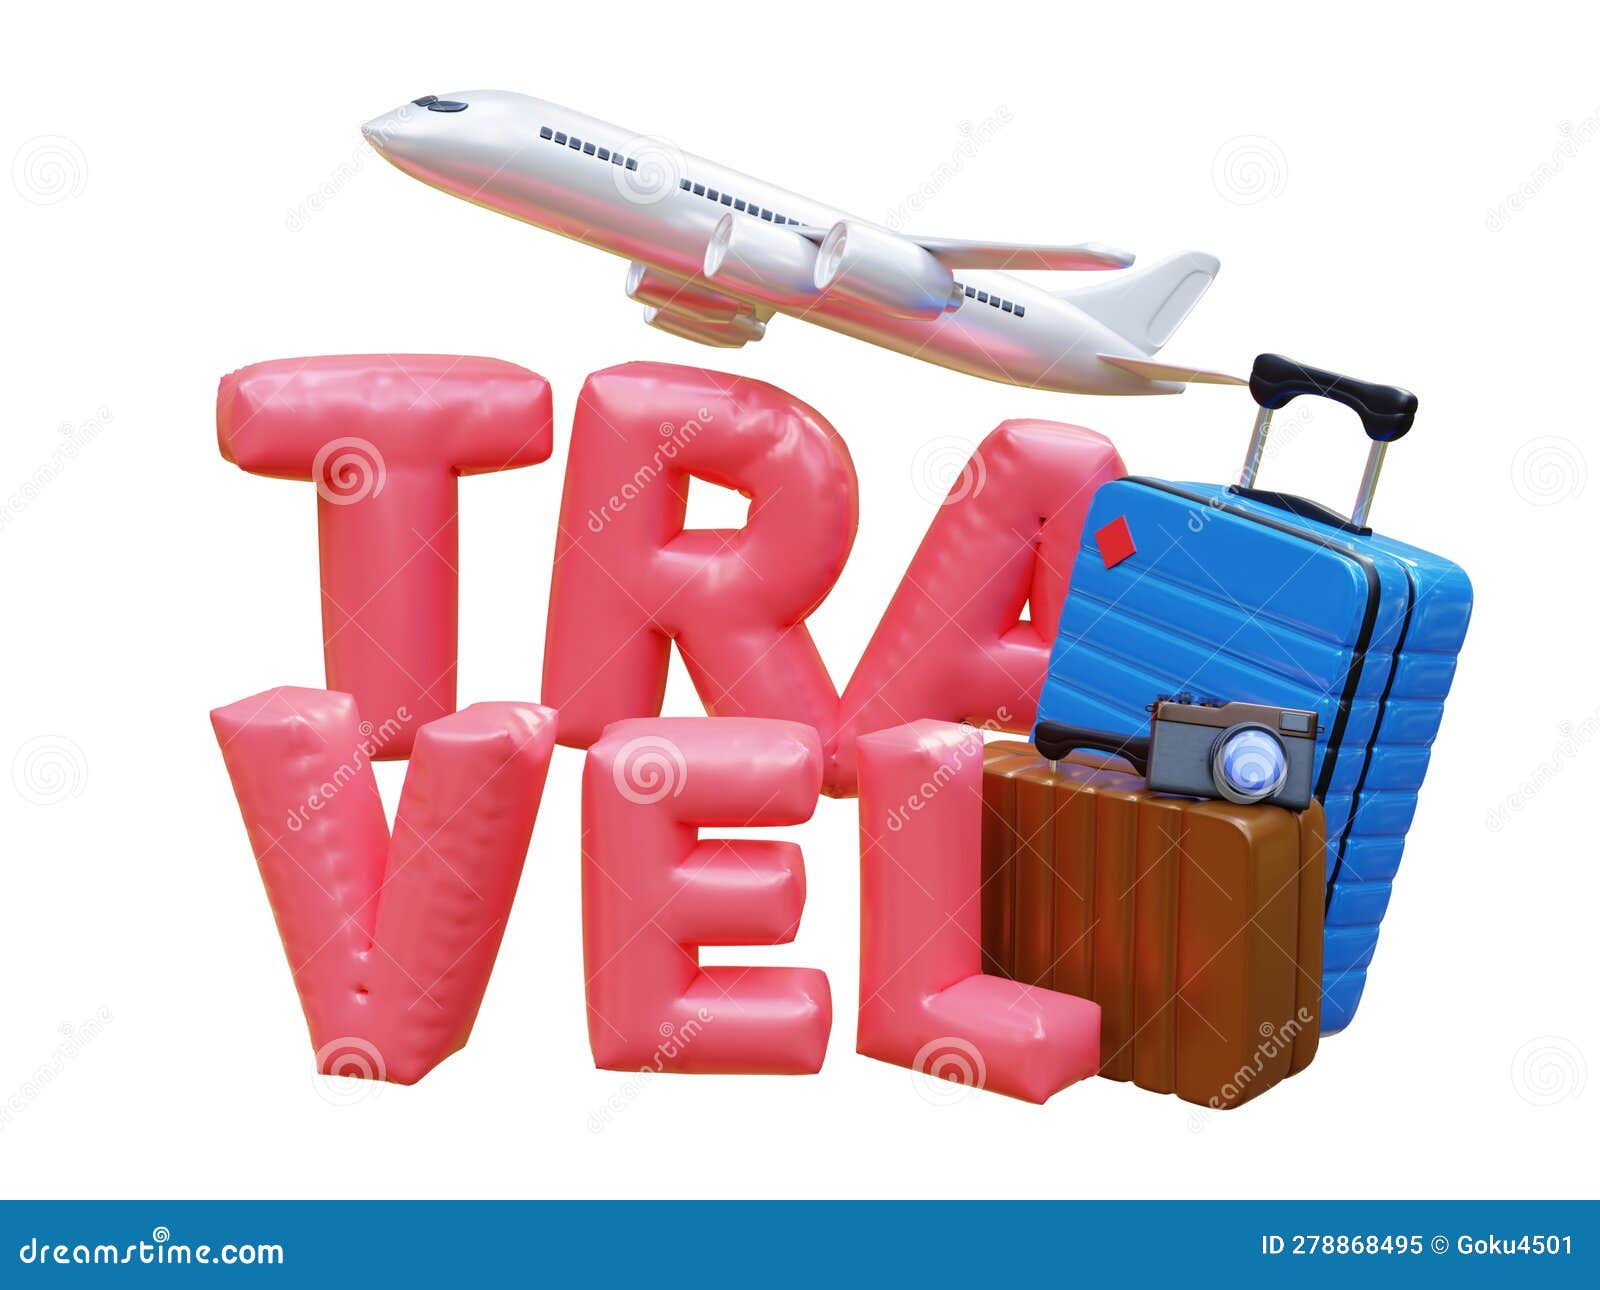 https://thumbs.dreamstime.com/z/vacaciones-y-viajes-vuelo-avi%C3%B3n-viaje-turismo-planear-mundo-con-d-equipaje-de-texto-tour-accesorios-concepto-ocio-representaci%C3%B3n-278868495.jpg